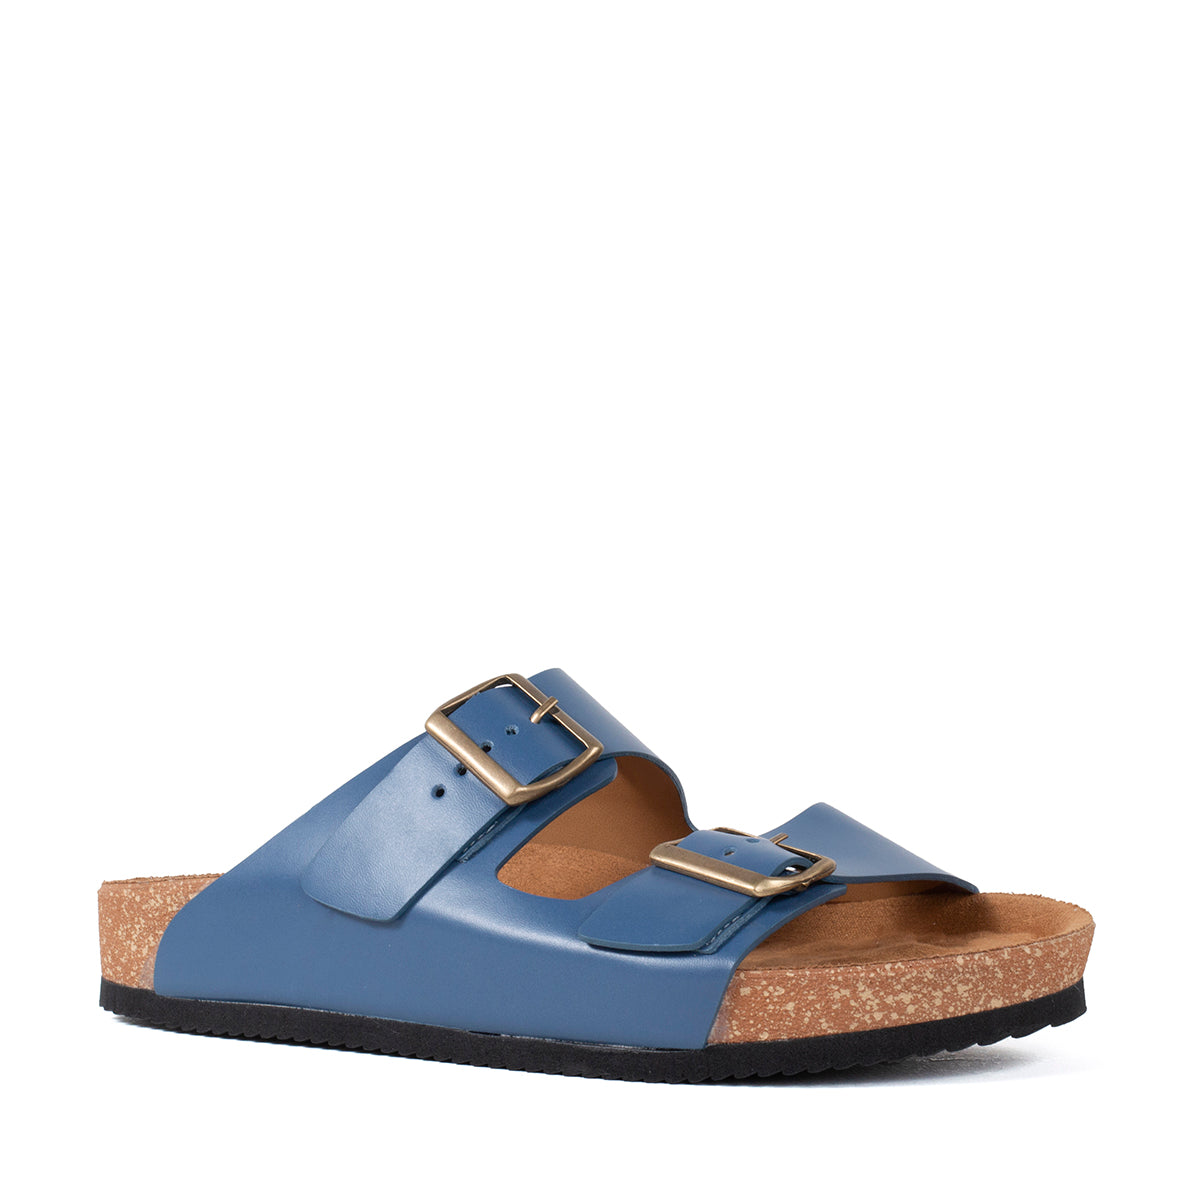 Sandalias planas de cuero color azul con hebilla cuadrada